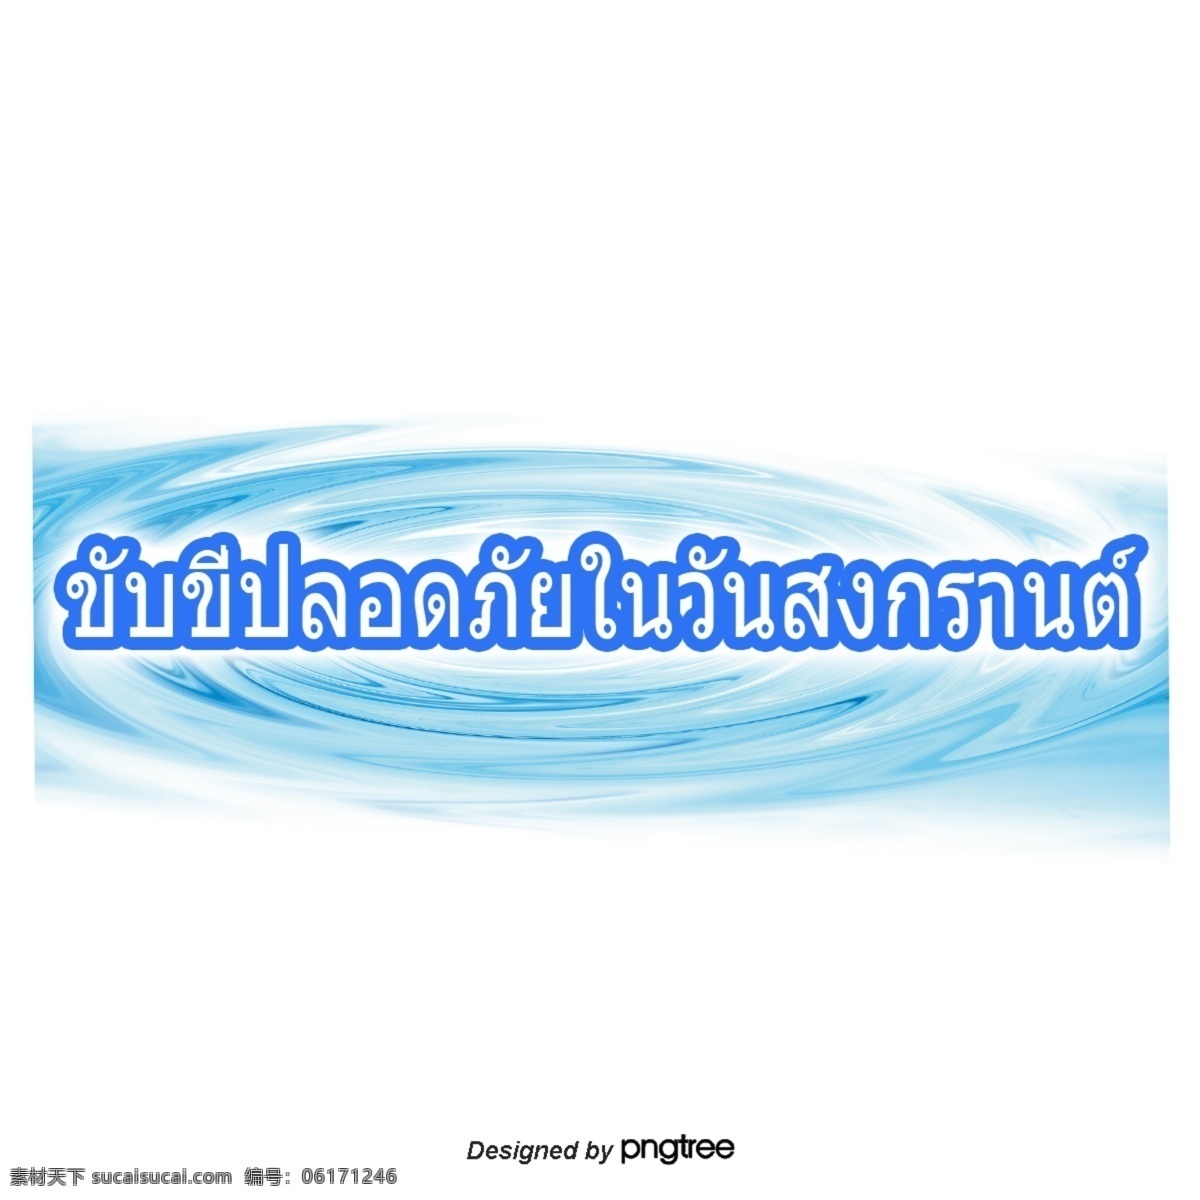 泰国 泼水节 文字 字体 深蓝色 安全 驾驶 深蓝色的字体 正方形 蓝色的水印